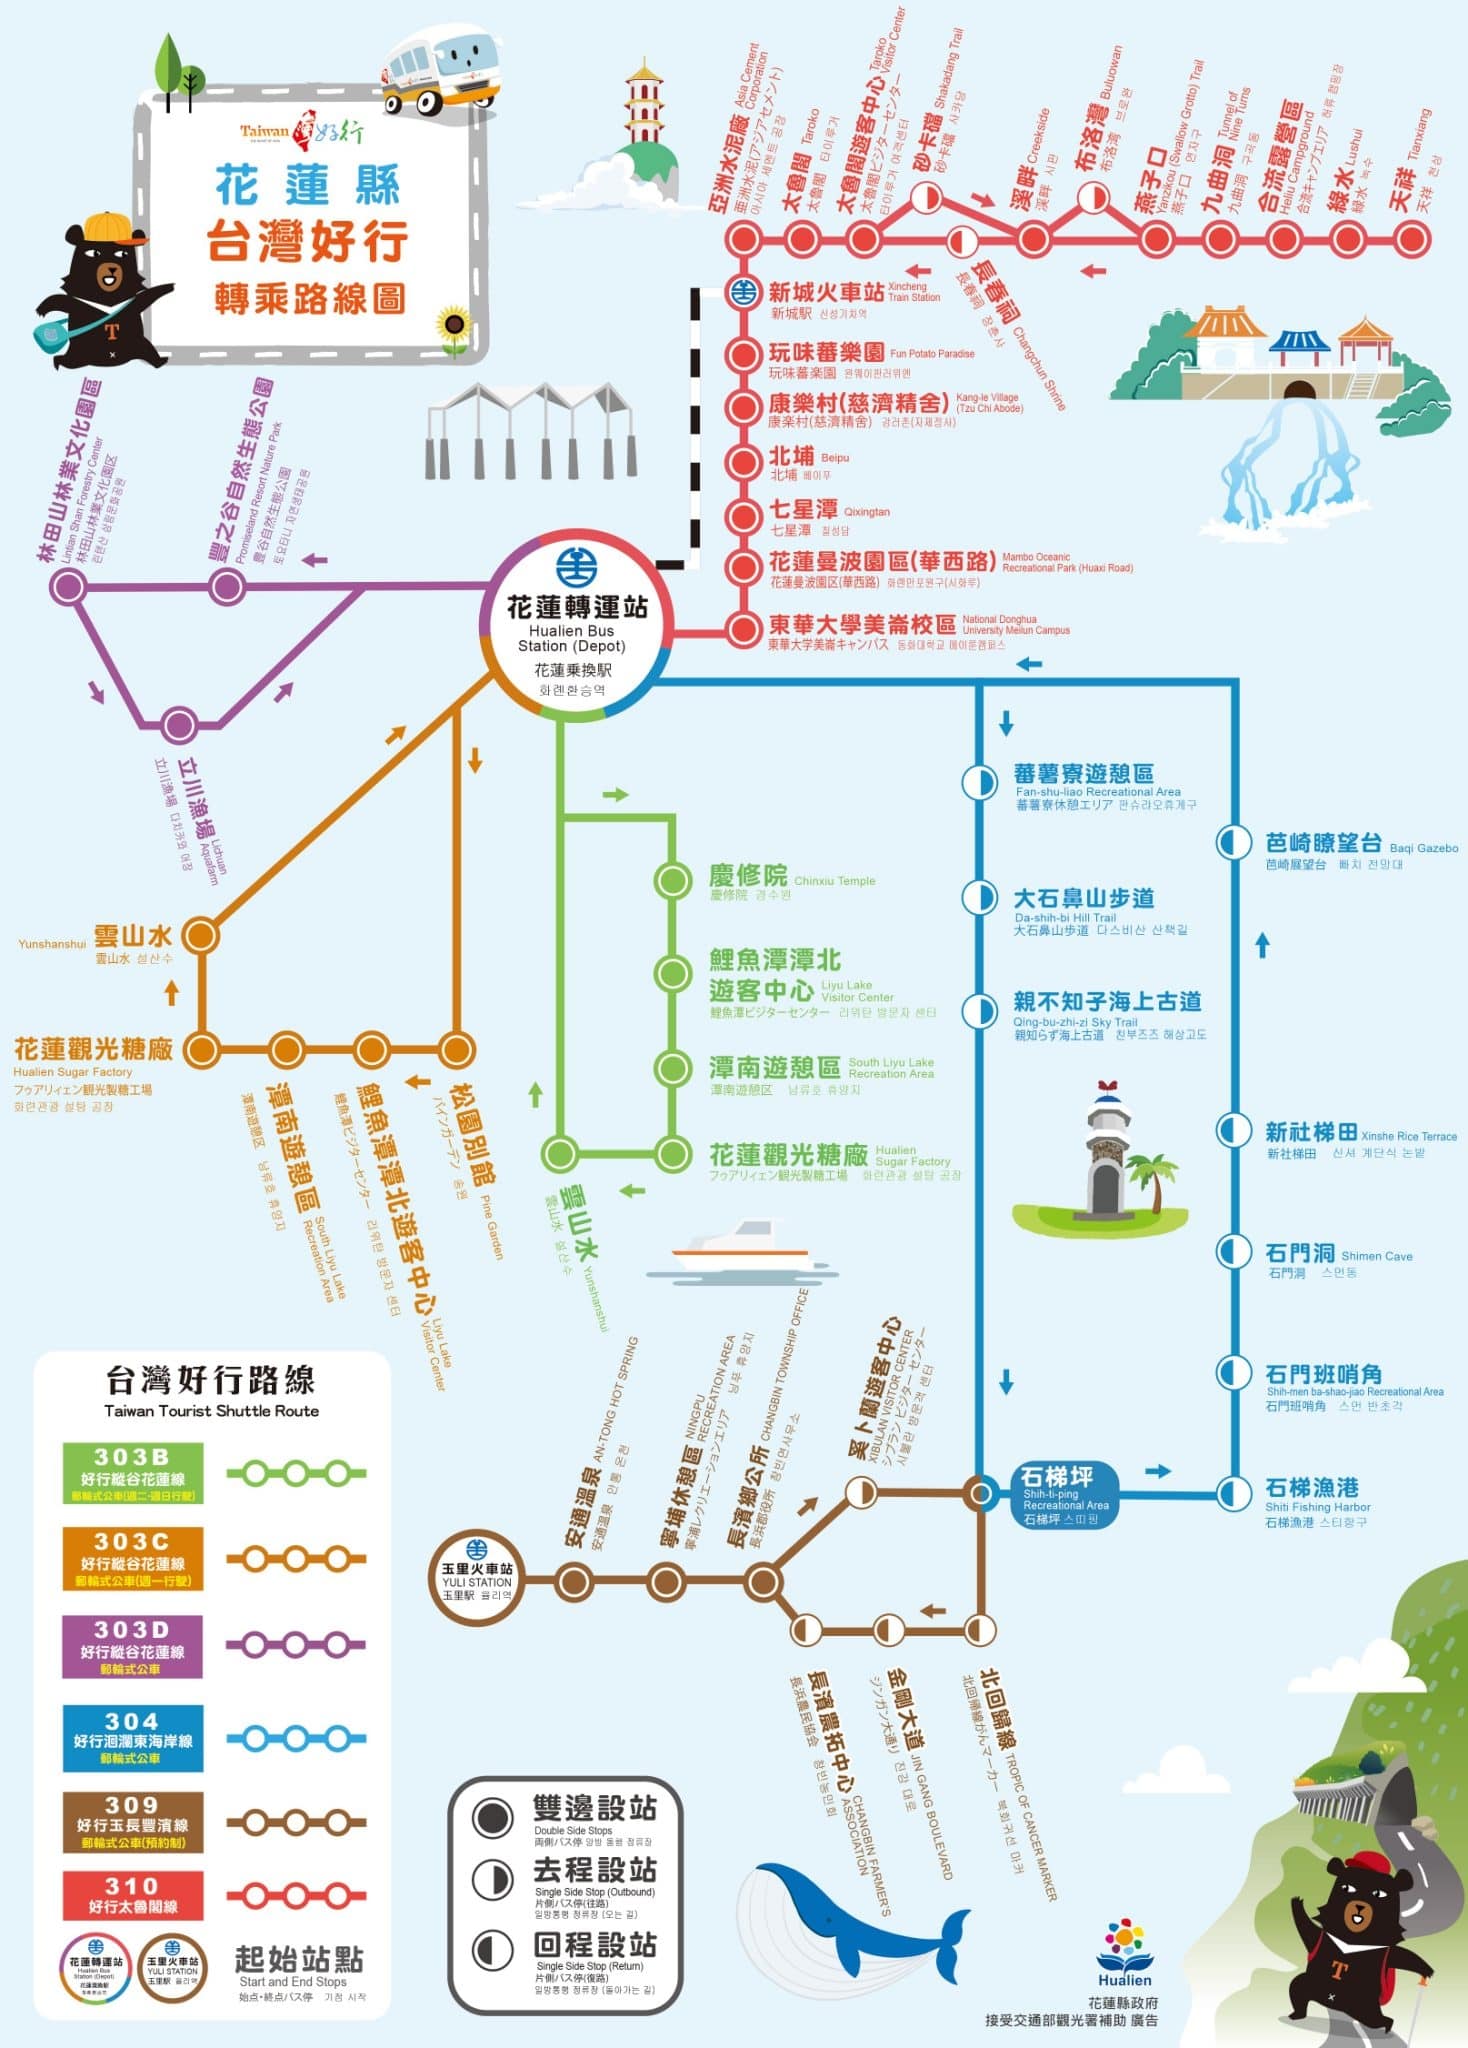 taiwan trip shuttle bus routes